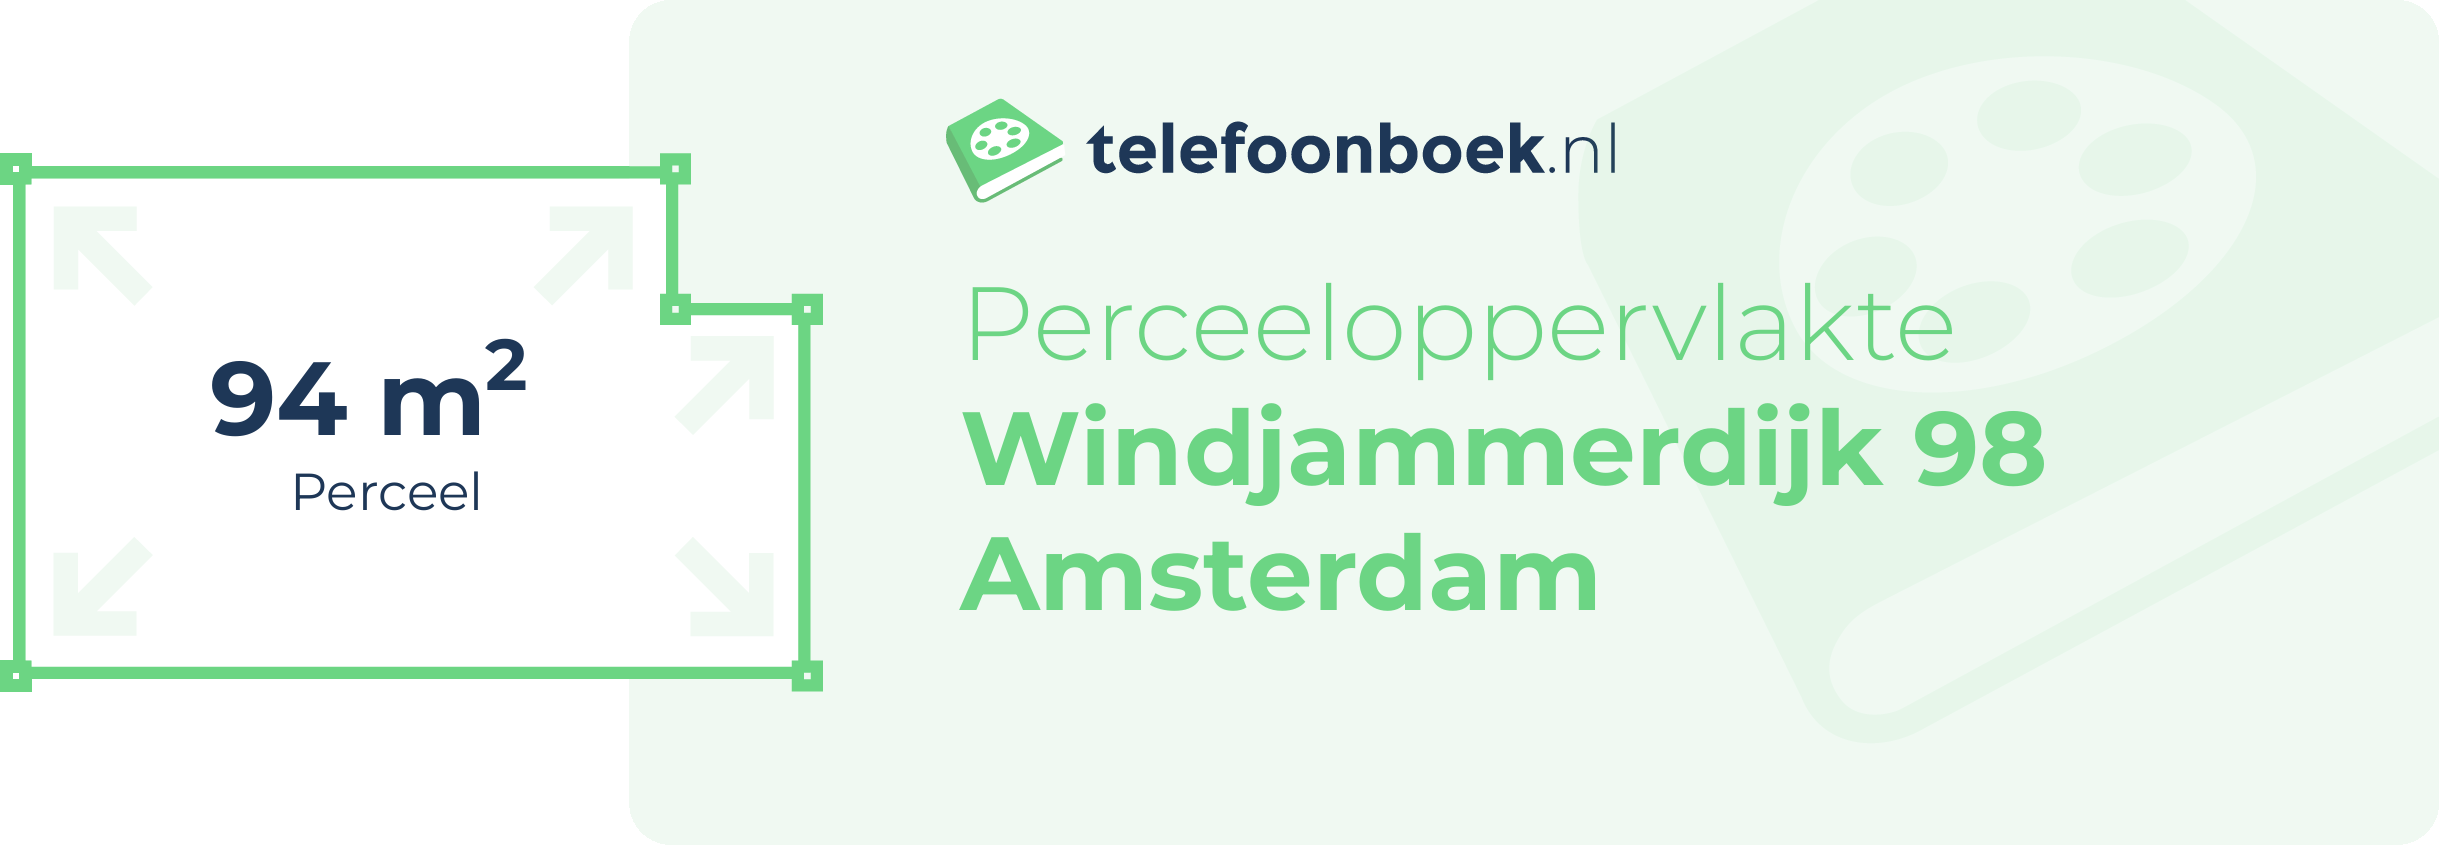 Perceeloppervlakte Windjammerdijk 98 Amsterdam